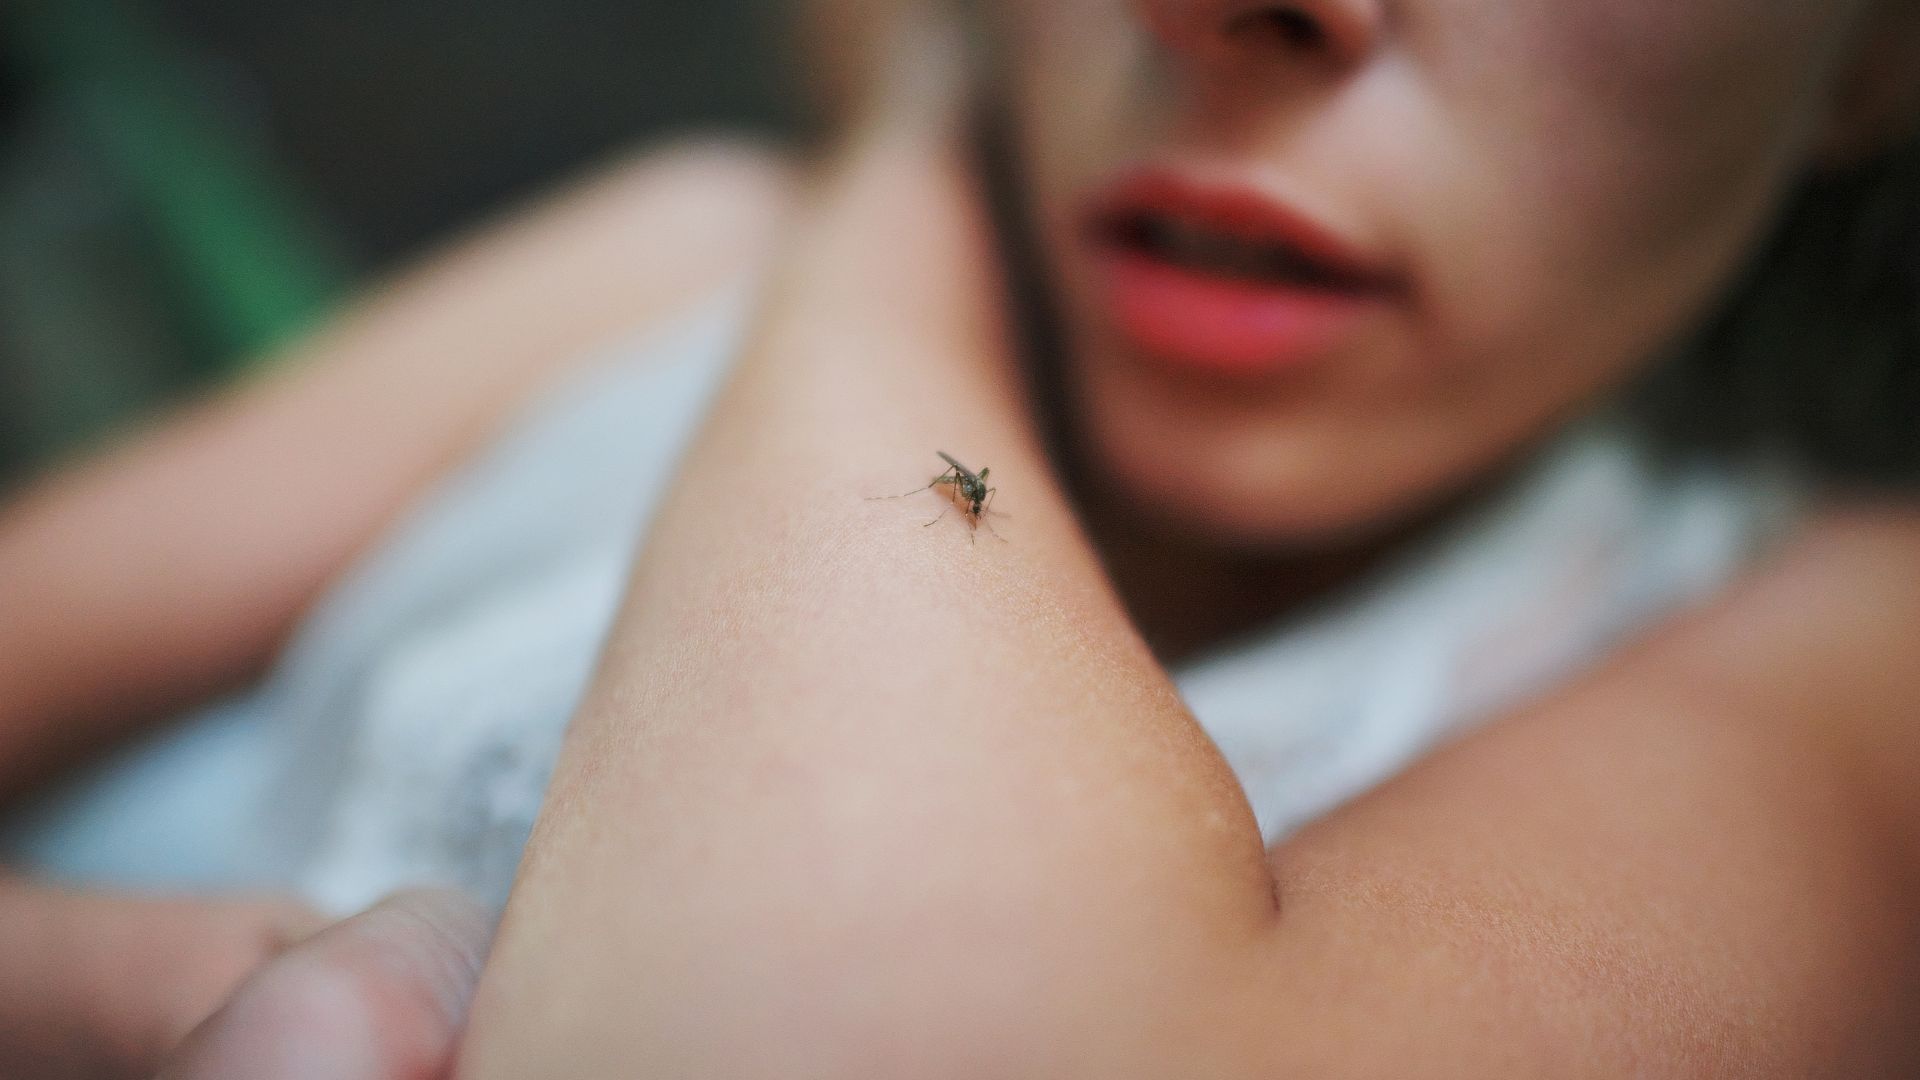 Meilleure prise anti-moustique : conseils pour la choisir et bons plans